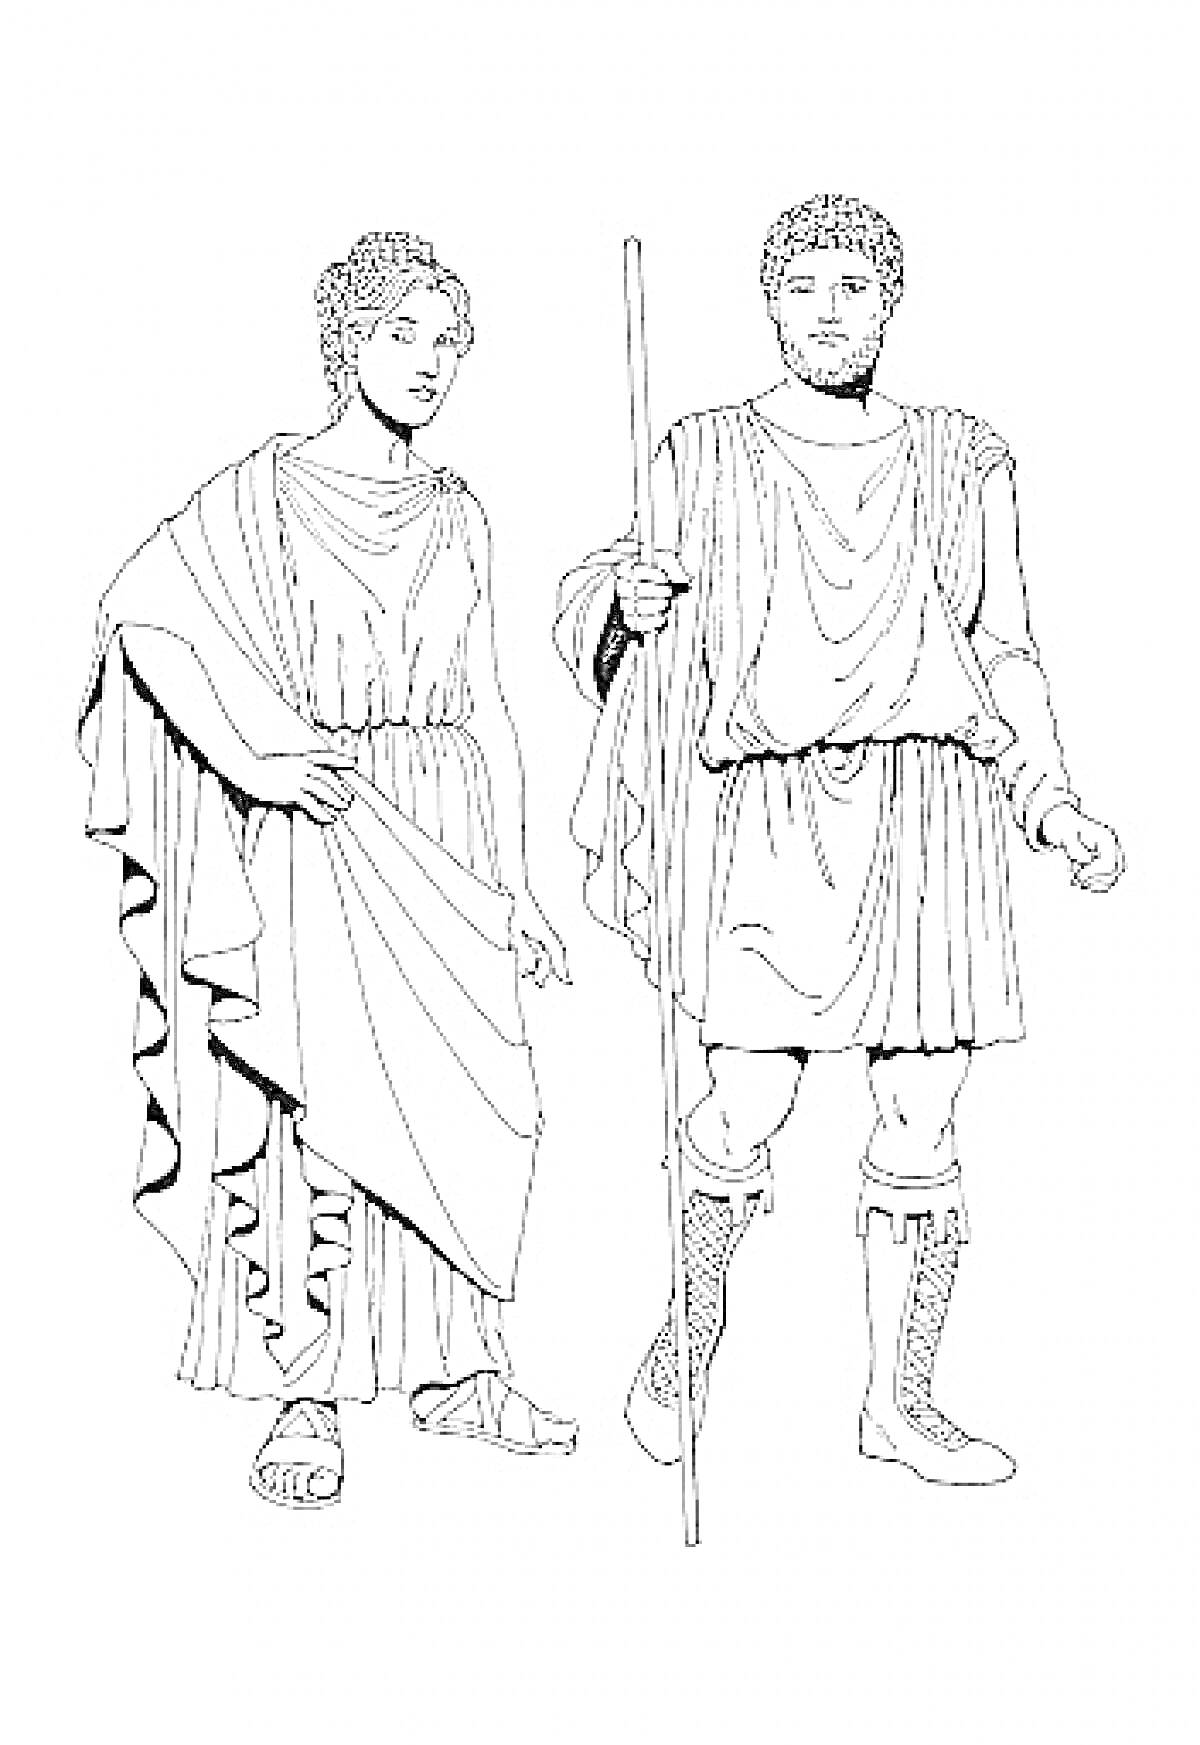 Мужчина и женщина в традиционной одежде Древней Греции, мужчина держит посох